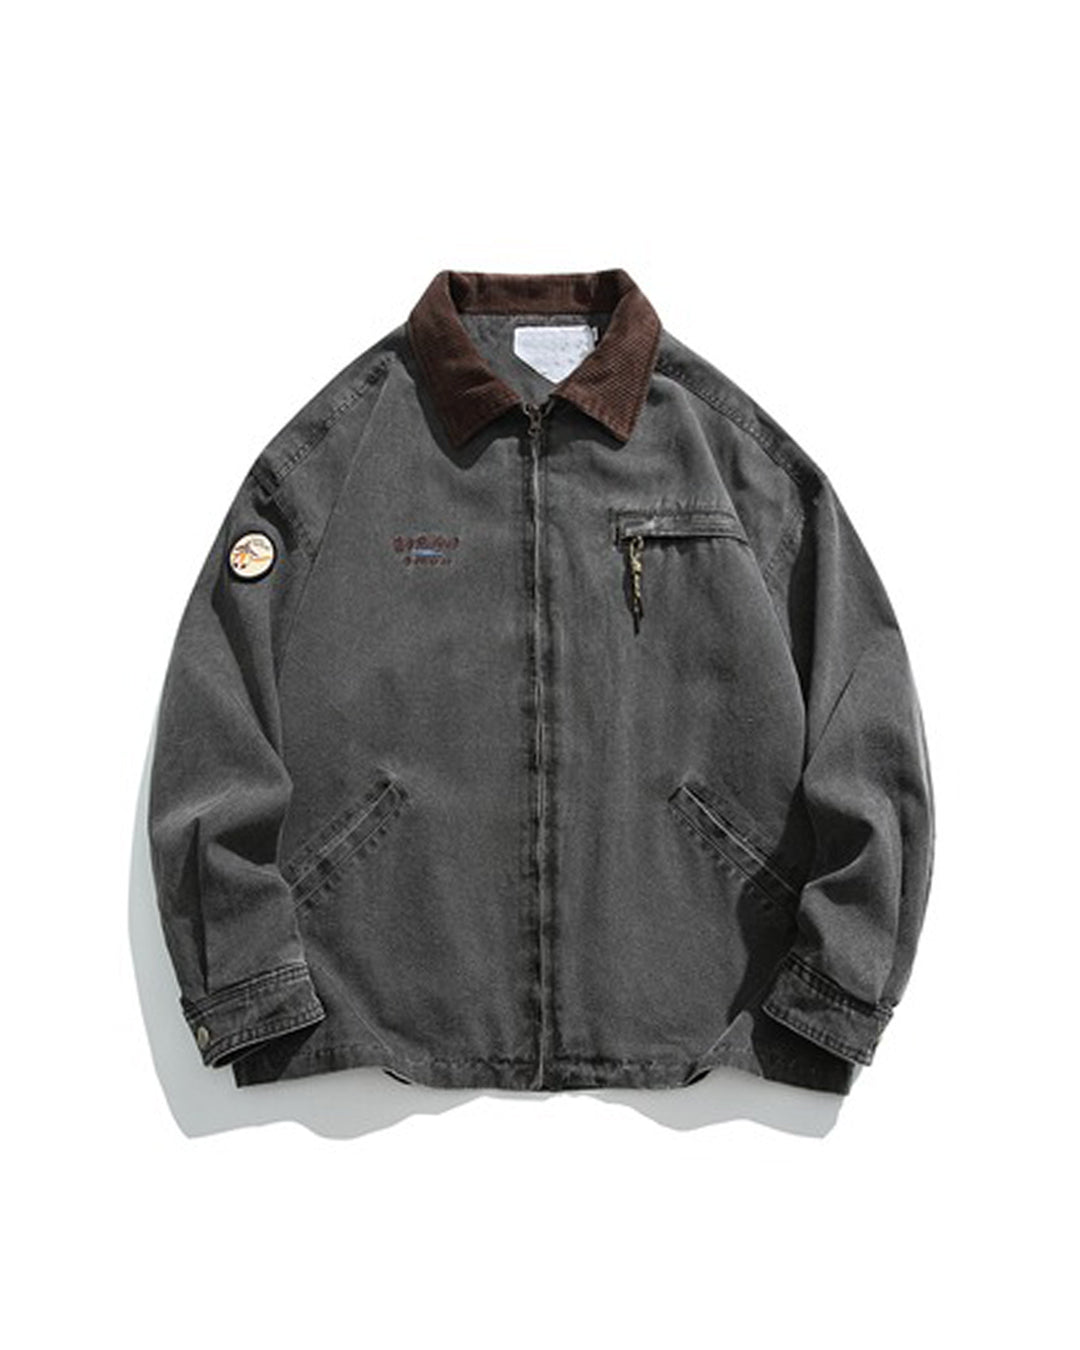 vintage jacket [NUMERO DUE]値段交渉可能です